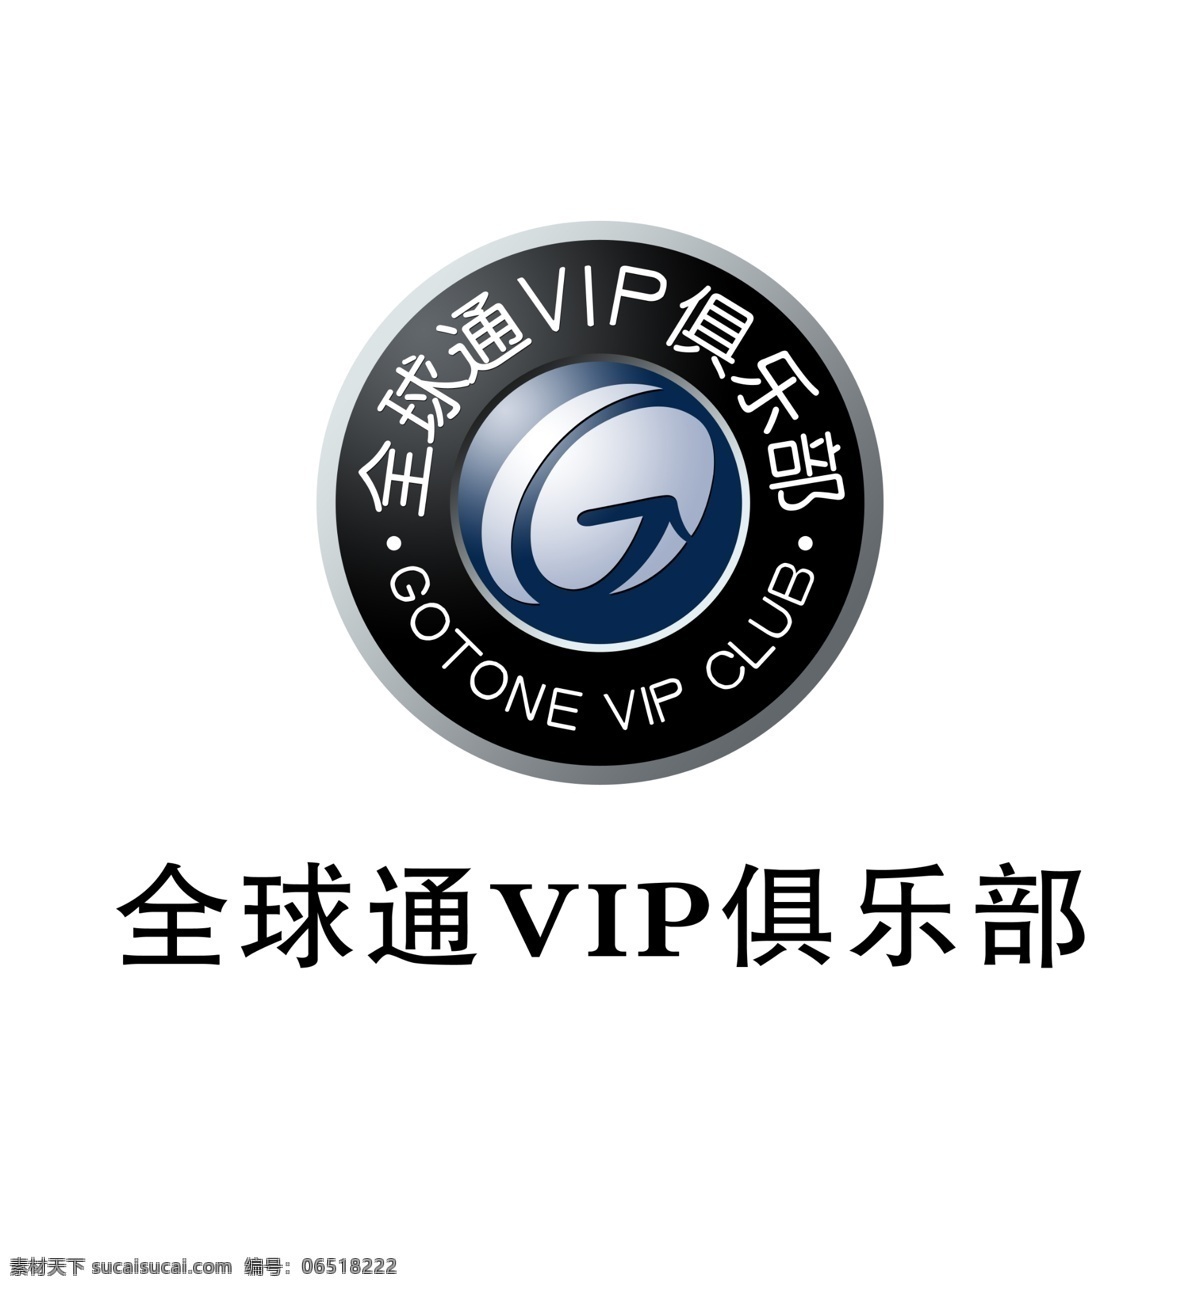 全球通vip 移动 全球通 vip 俱乐部 移动全球通 标志设计 广告设计模板 源文件